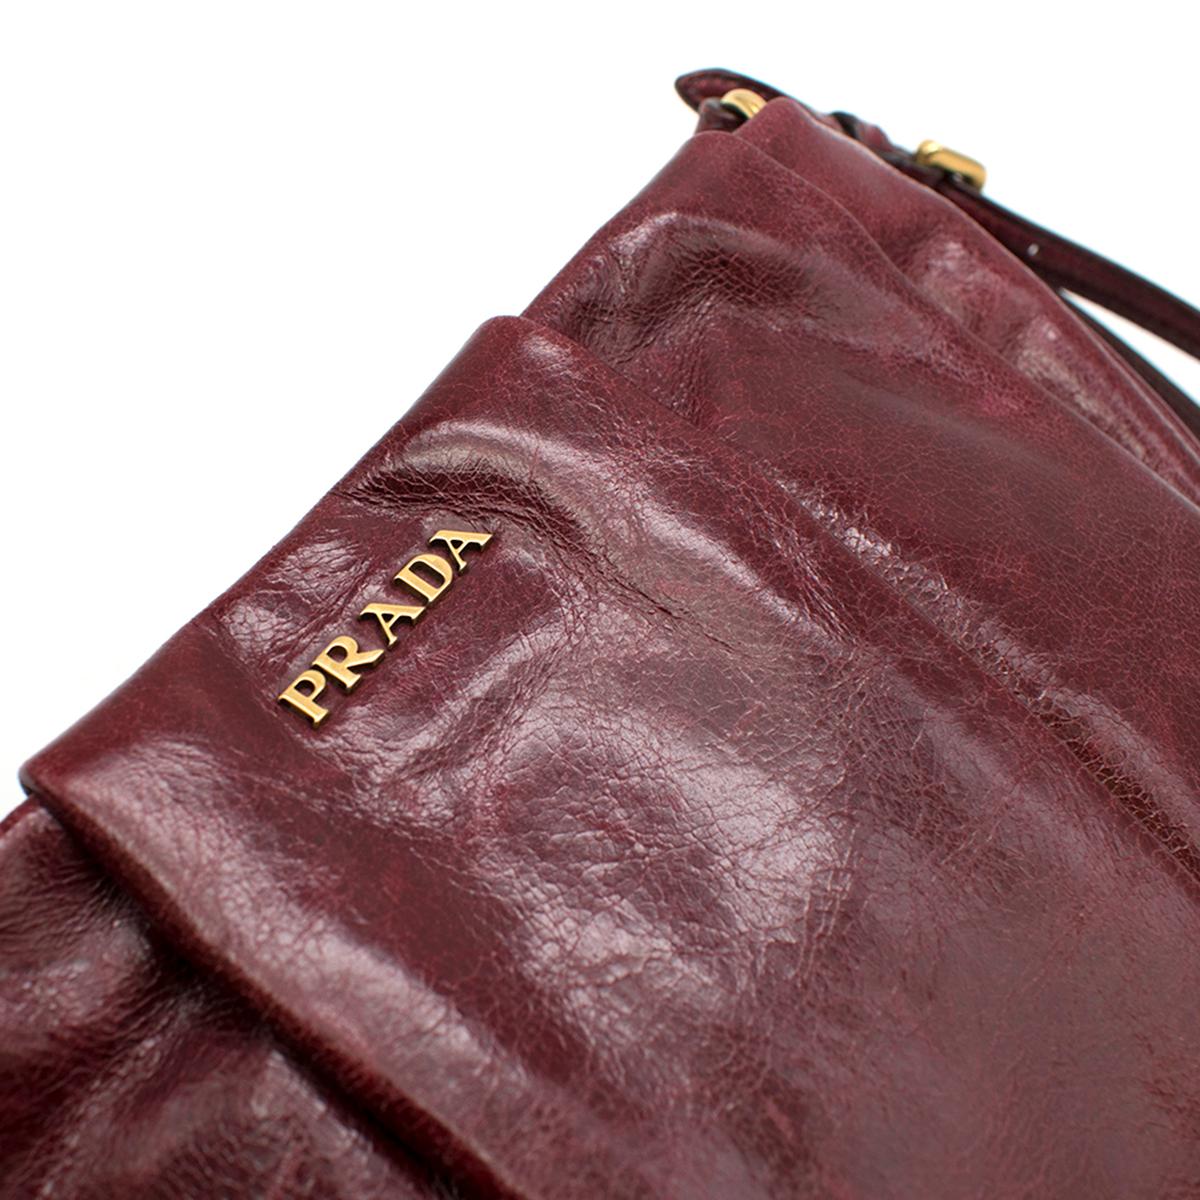 Women's Prada burgundy leather wristlet clutch